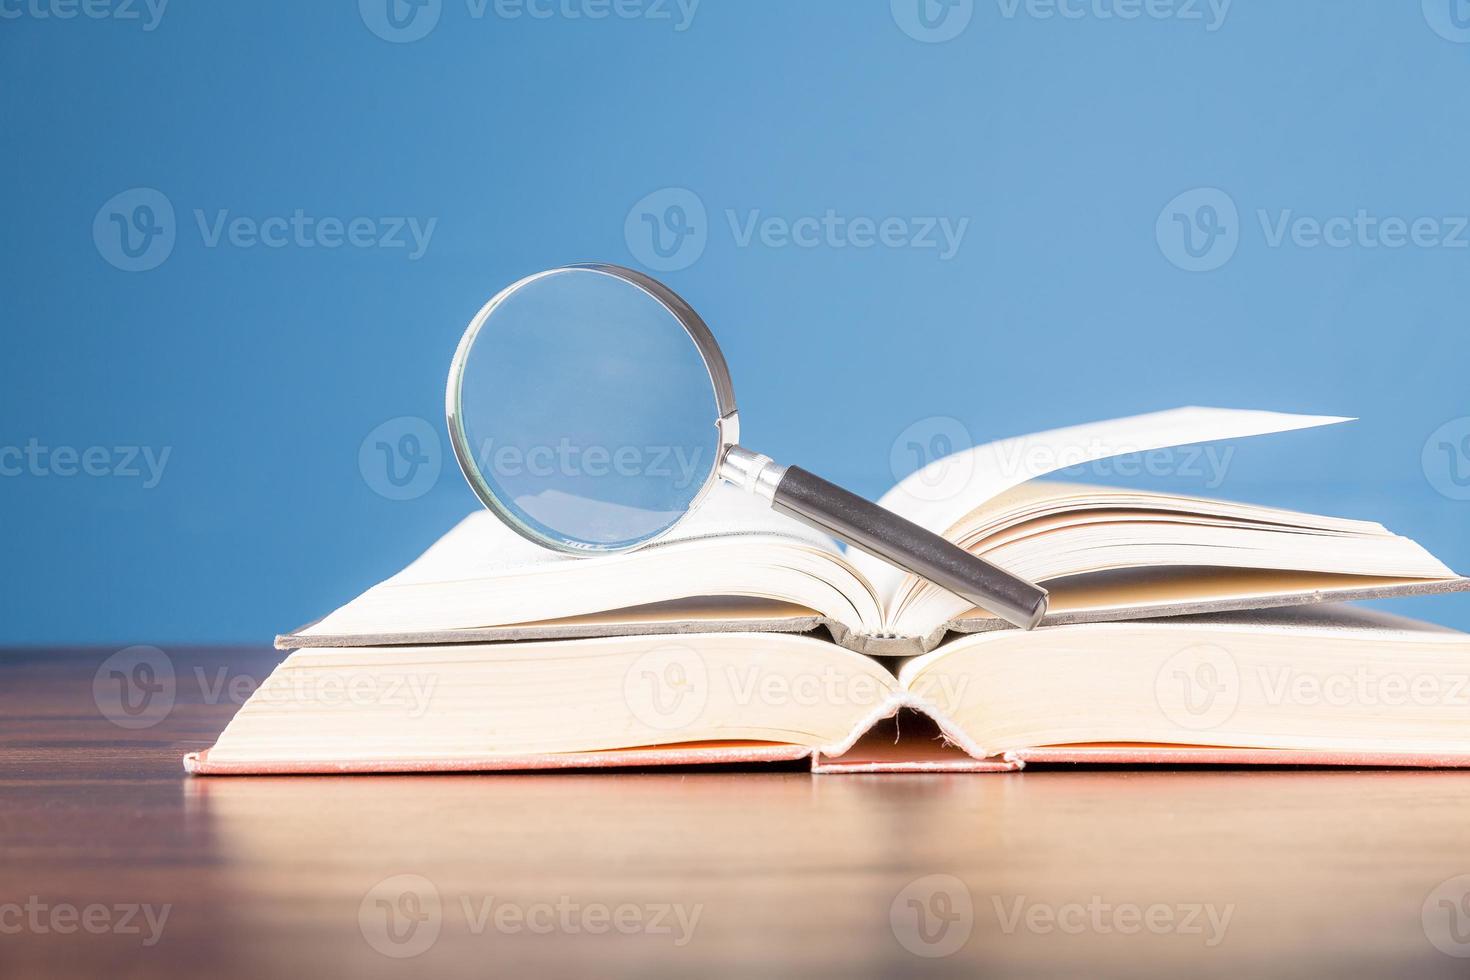 öppen bok med förstoringsglas på träskrivbord i informationsbibliotek för skolan eller universitetet, koncept för utbildning, läsning, studier, kopieringsutrymme och blå bakgrund. foto